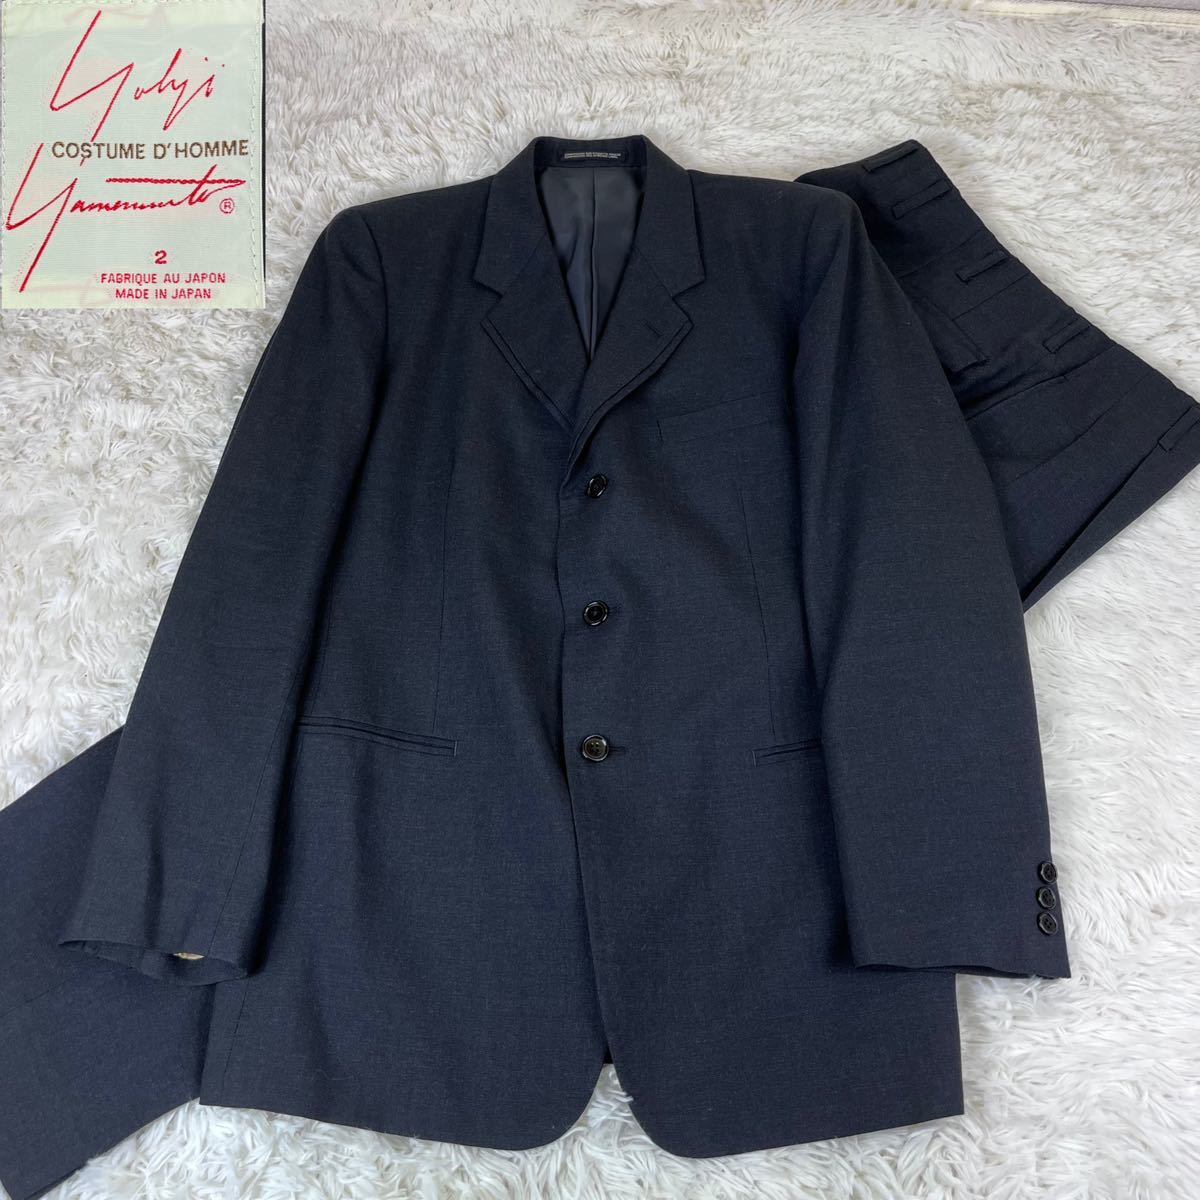 Yohji Yamamoto COSTUME D'HOMME セットアップ ビジネス ブラックシングルスーツ